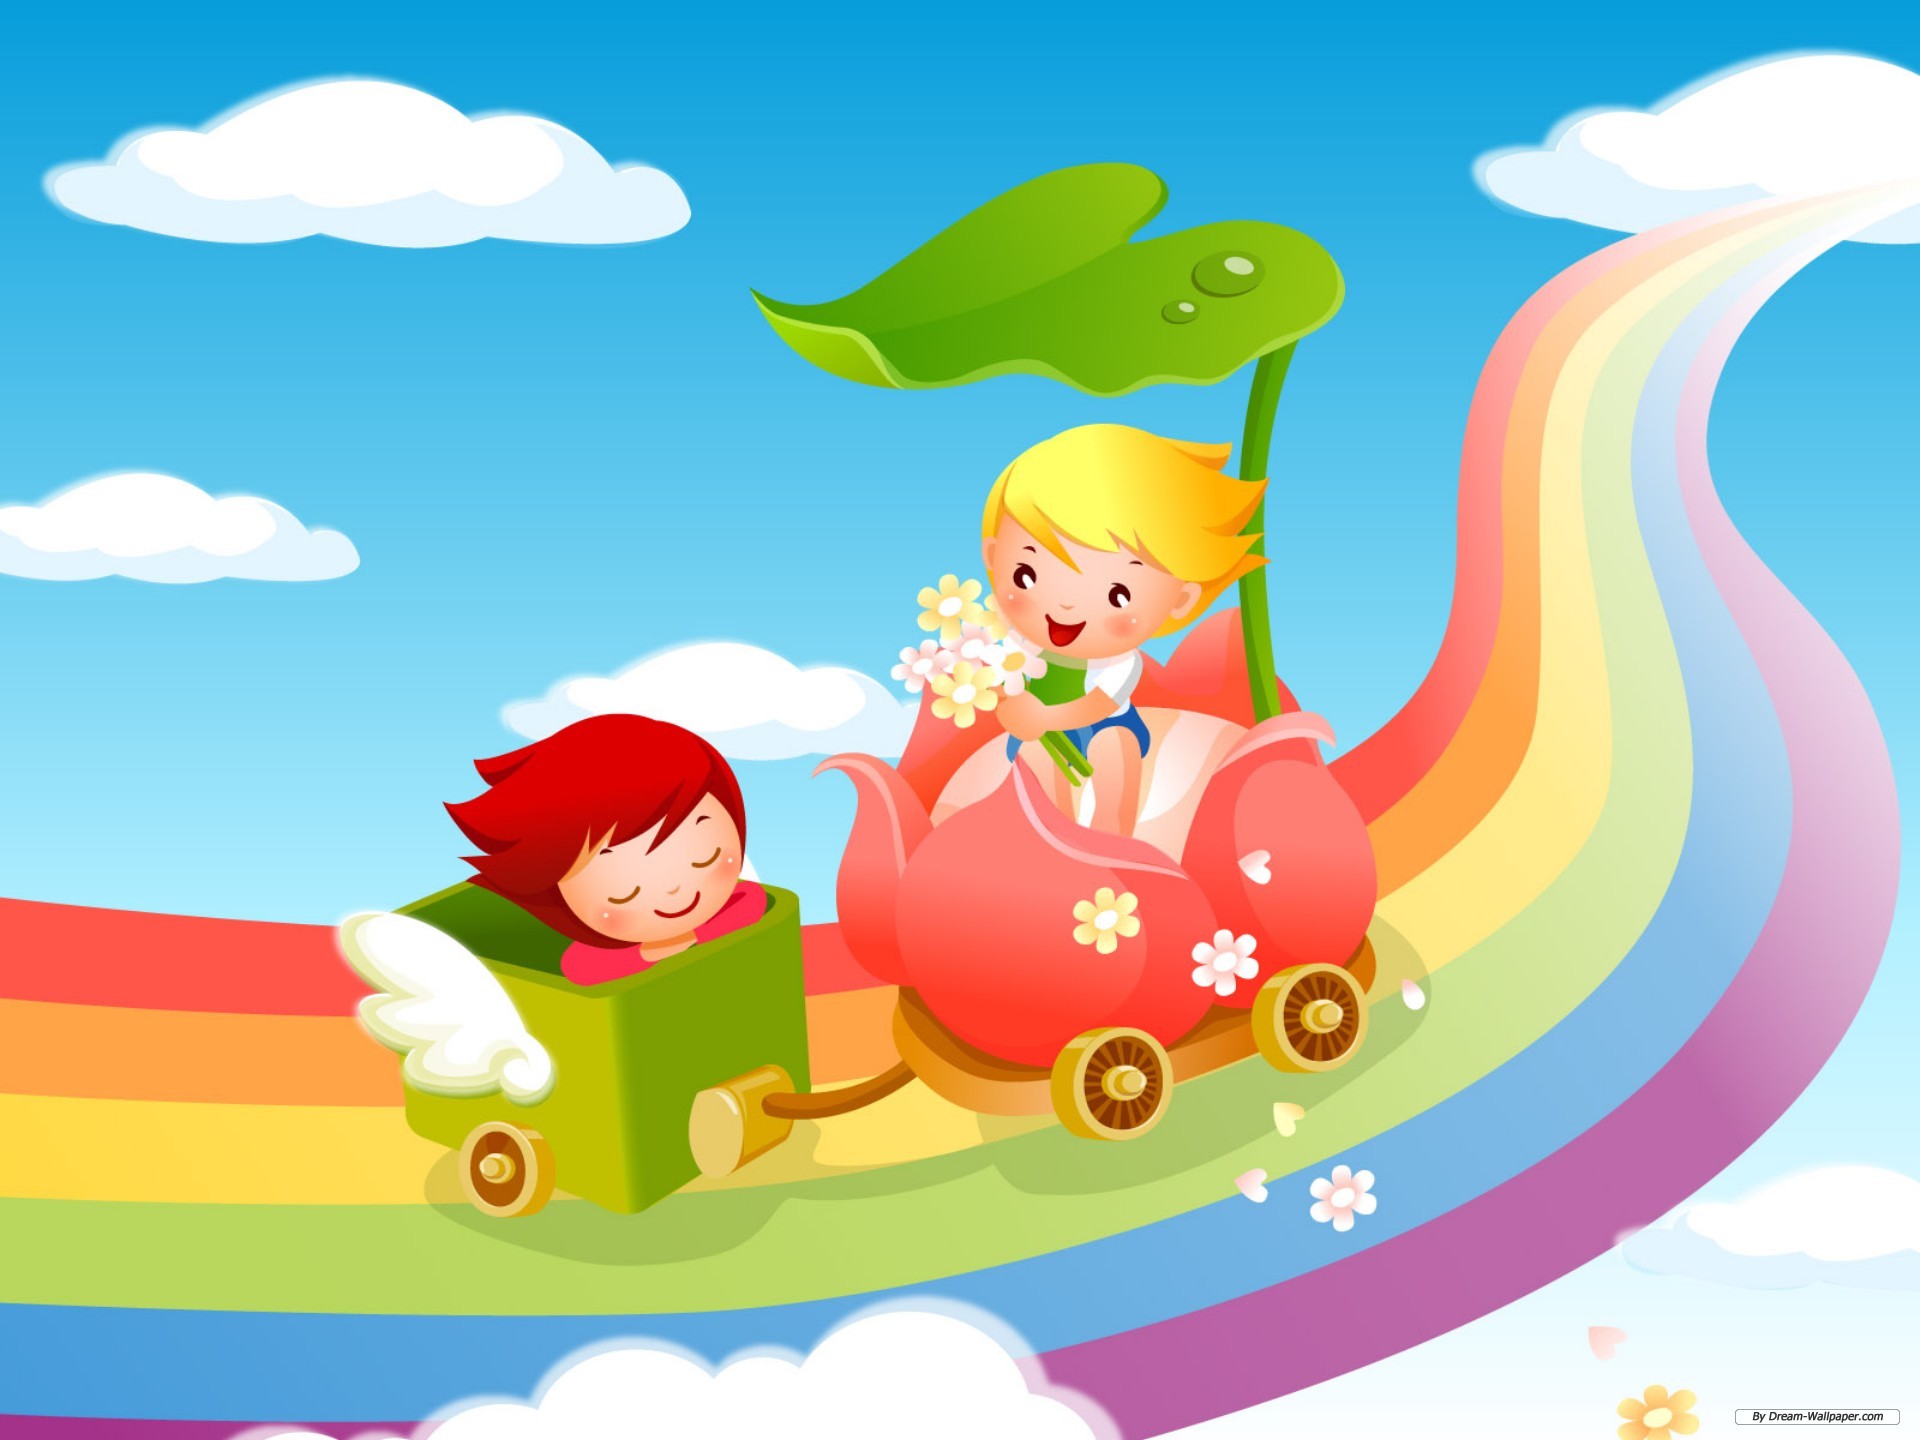 Сайт детских игр: Детские развивающие игры онлайн, детский сайт "Играемся"